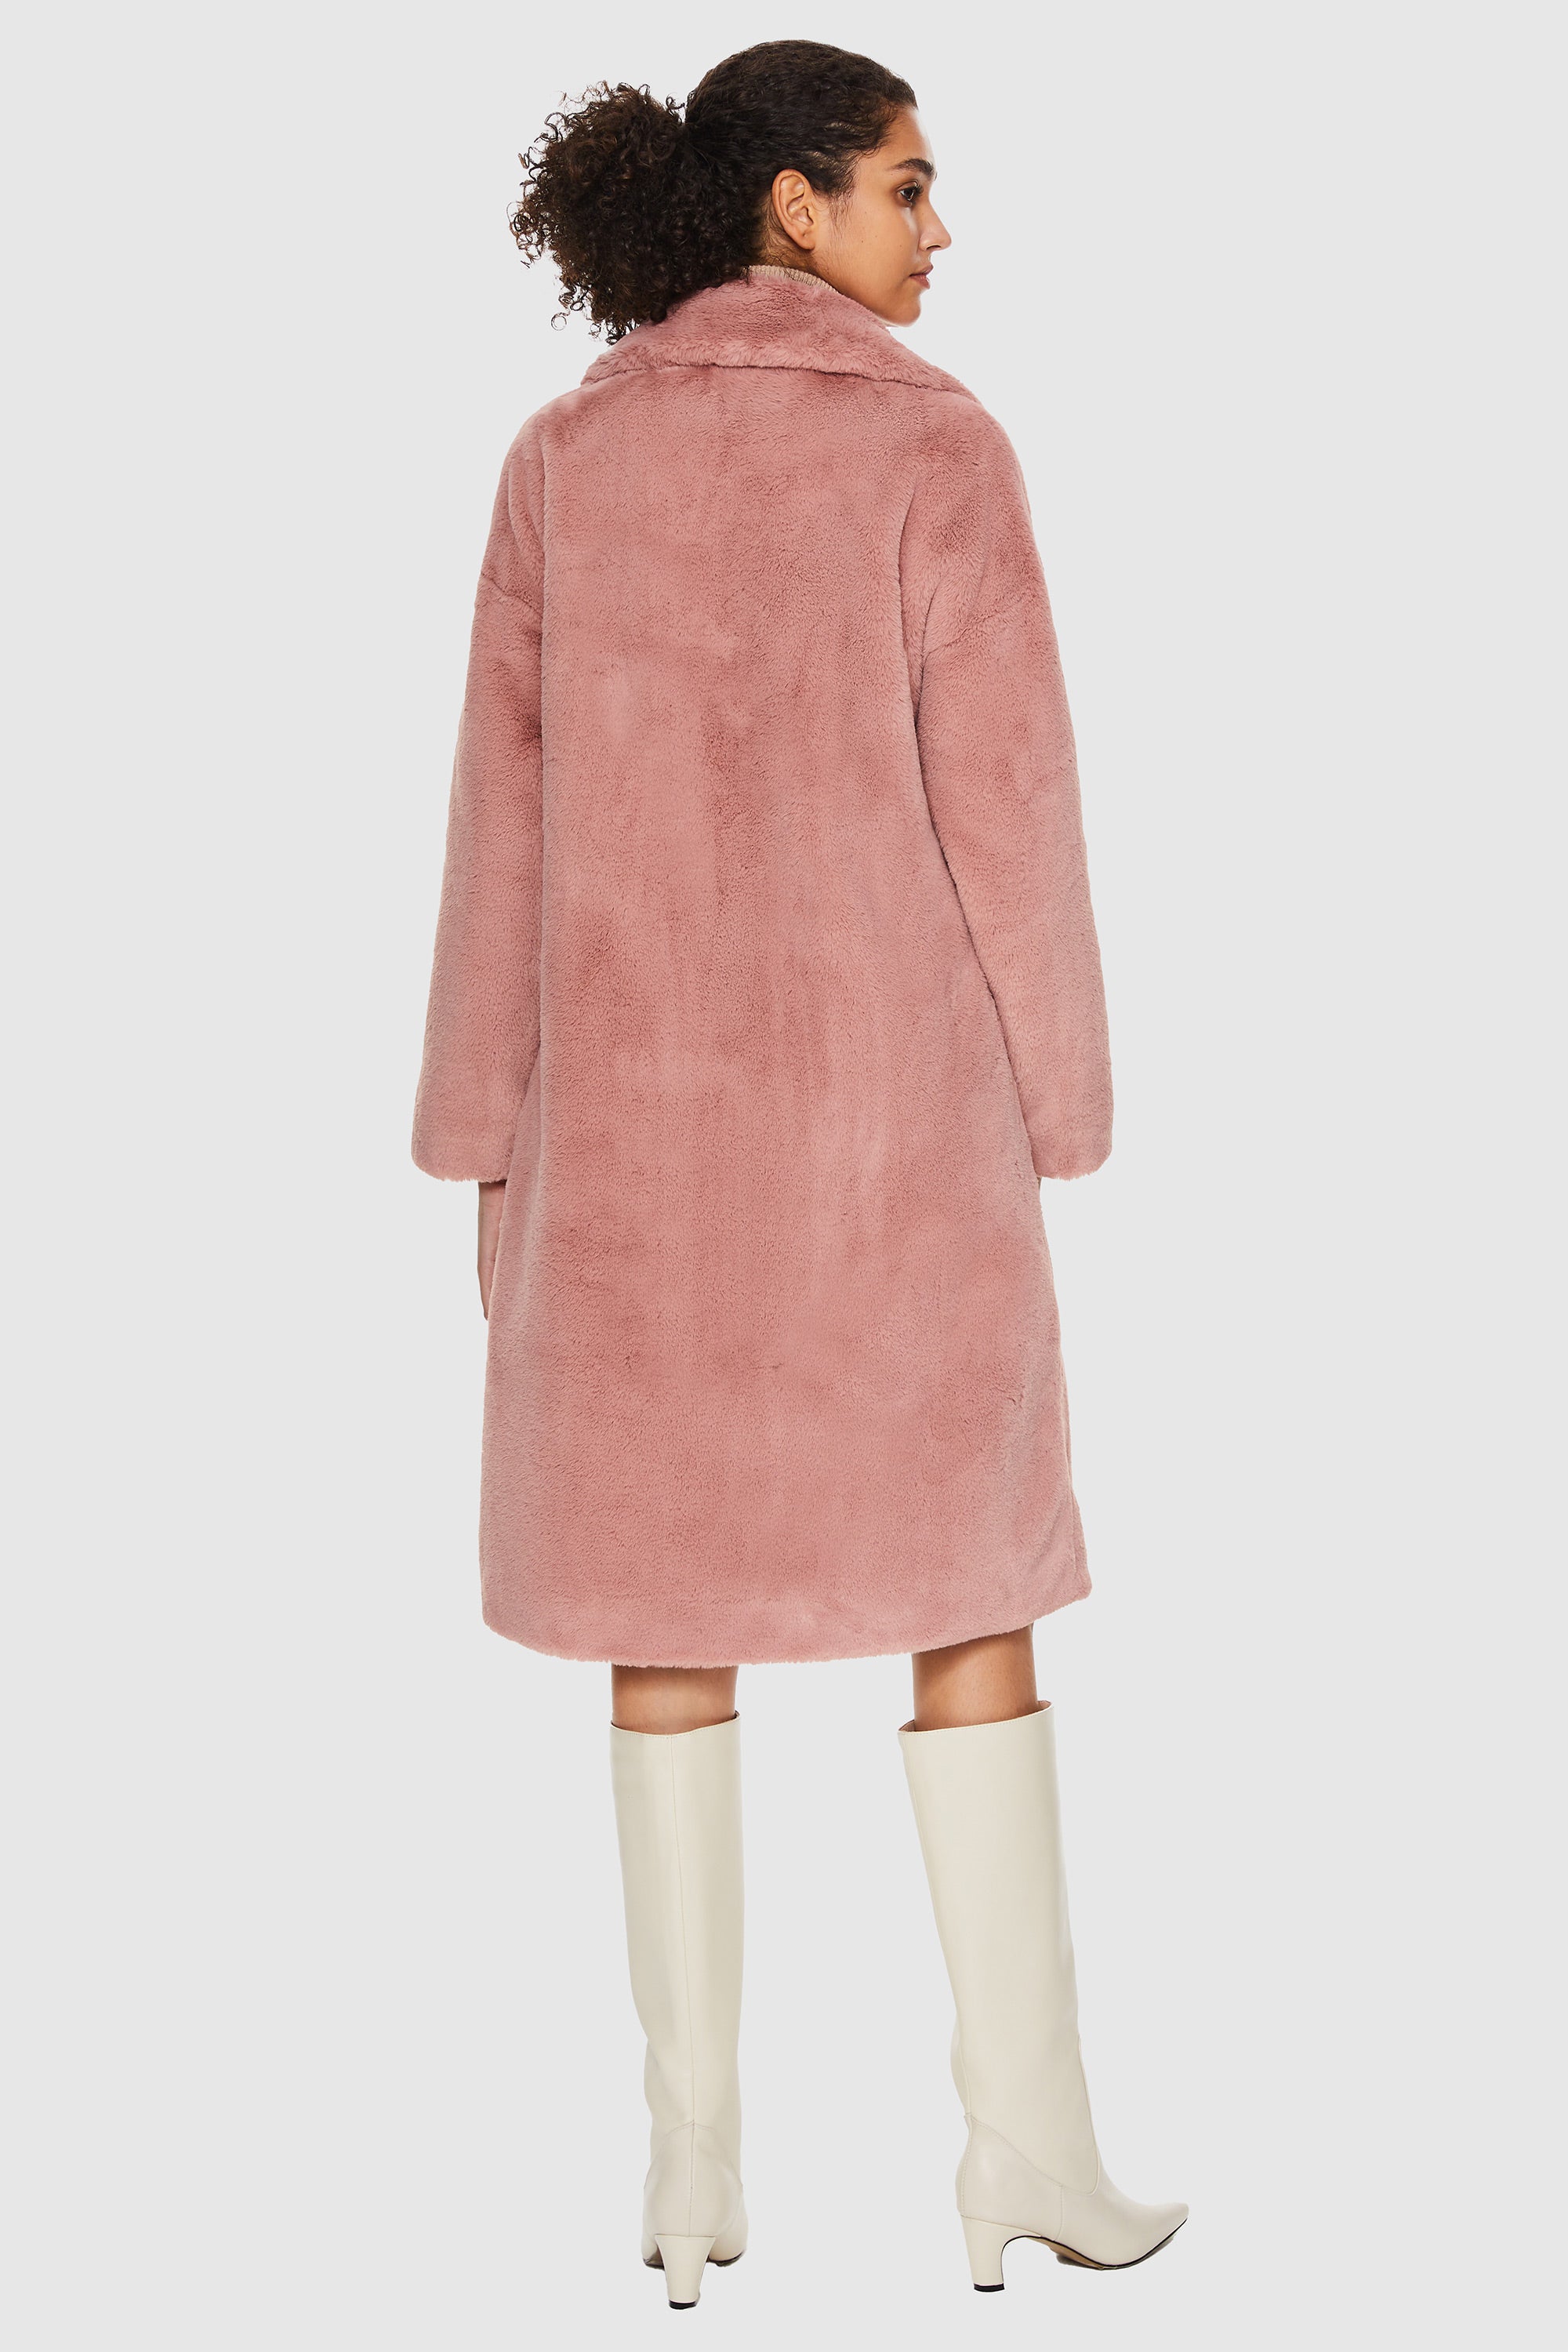 Faux Fur Mid-Length Sherpa Teddy Coat